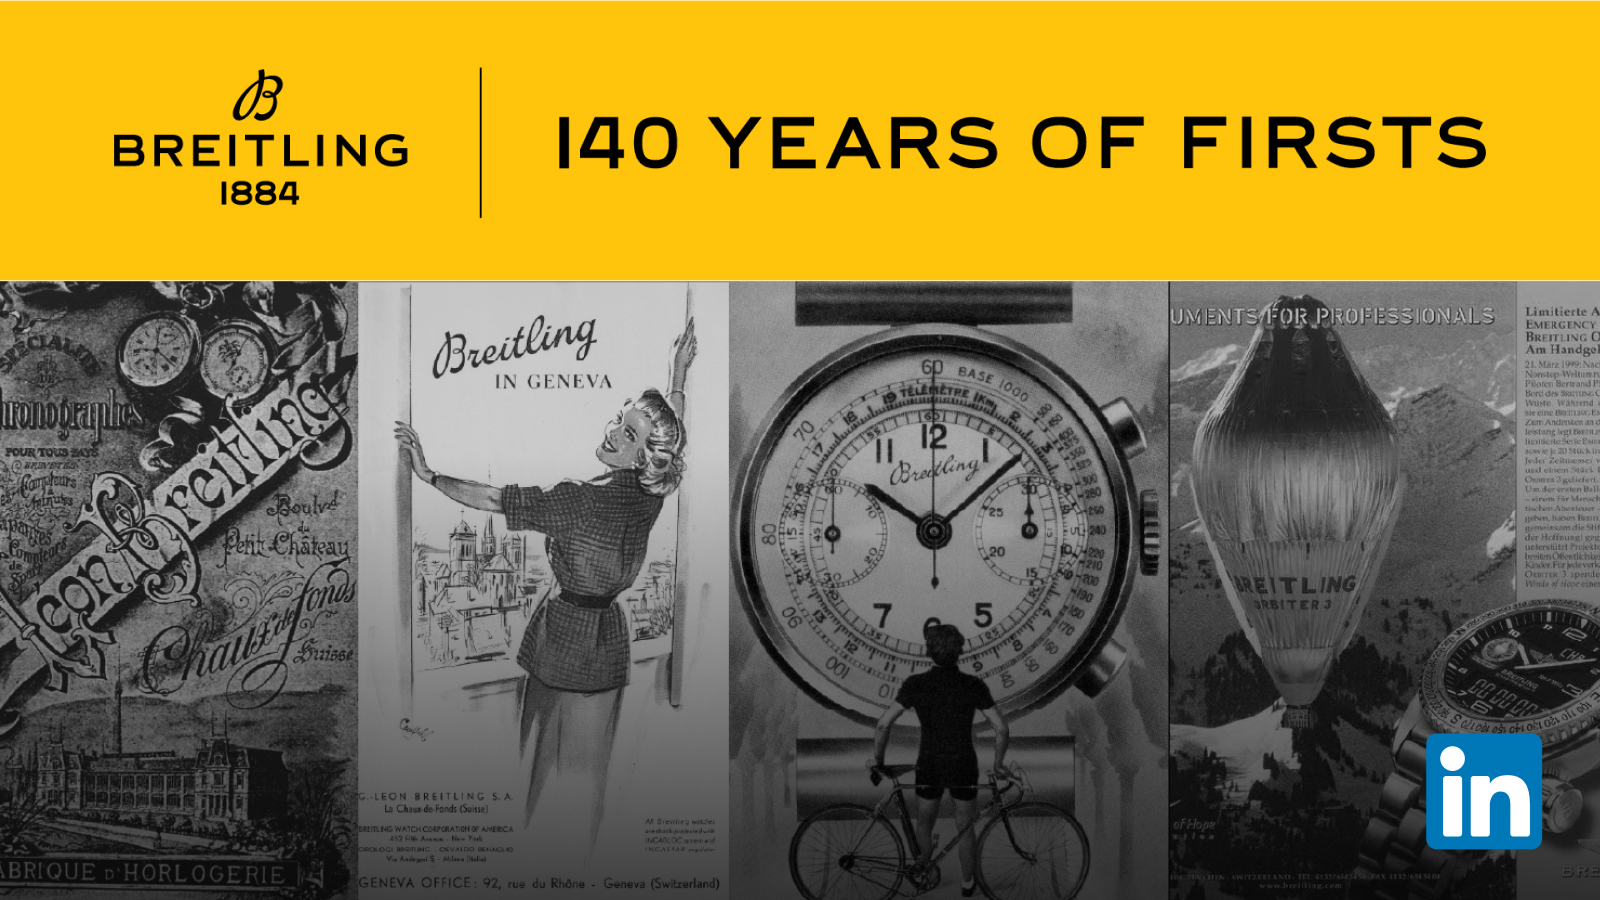 Segui il viaggio di Breitling su LinkedIn e iscriviti alla nostra newsletter «Dal 1884» per ricevere tutti i contenuti relativi alla nostra storia.